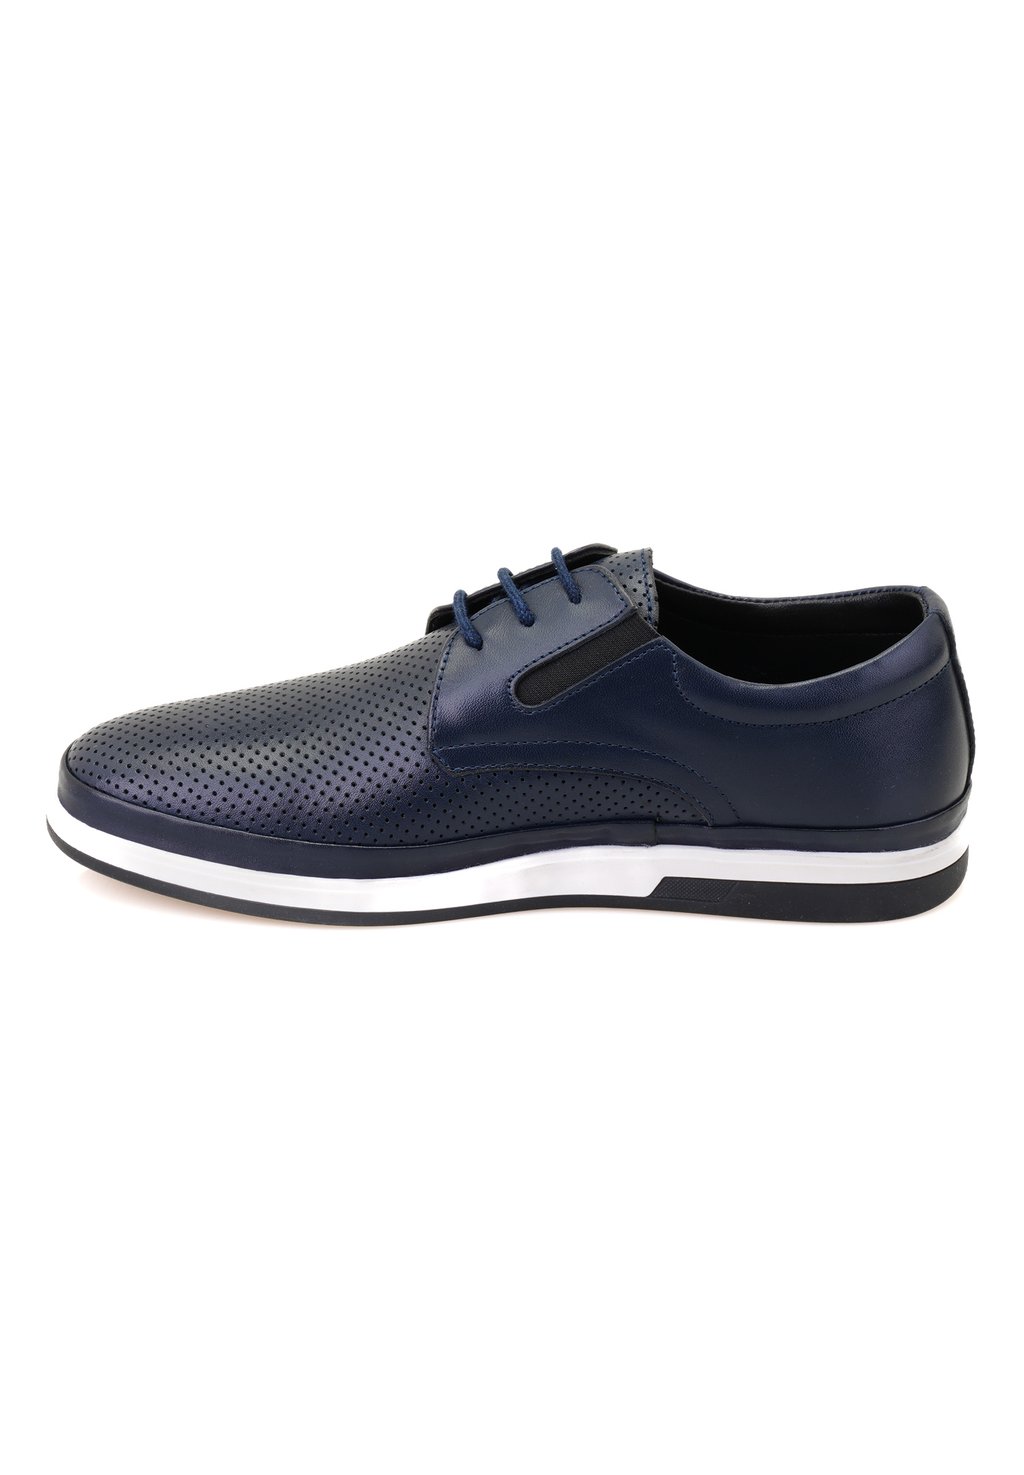 Спортивные туфли на шнуровке Desa, цвет navy спортивные туфли на шнуровке desa цвет dark blue